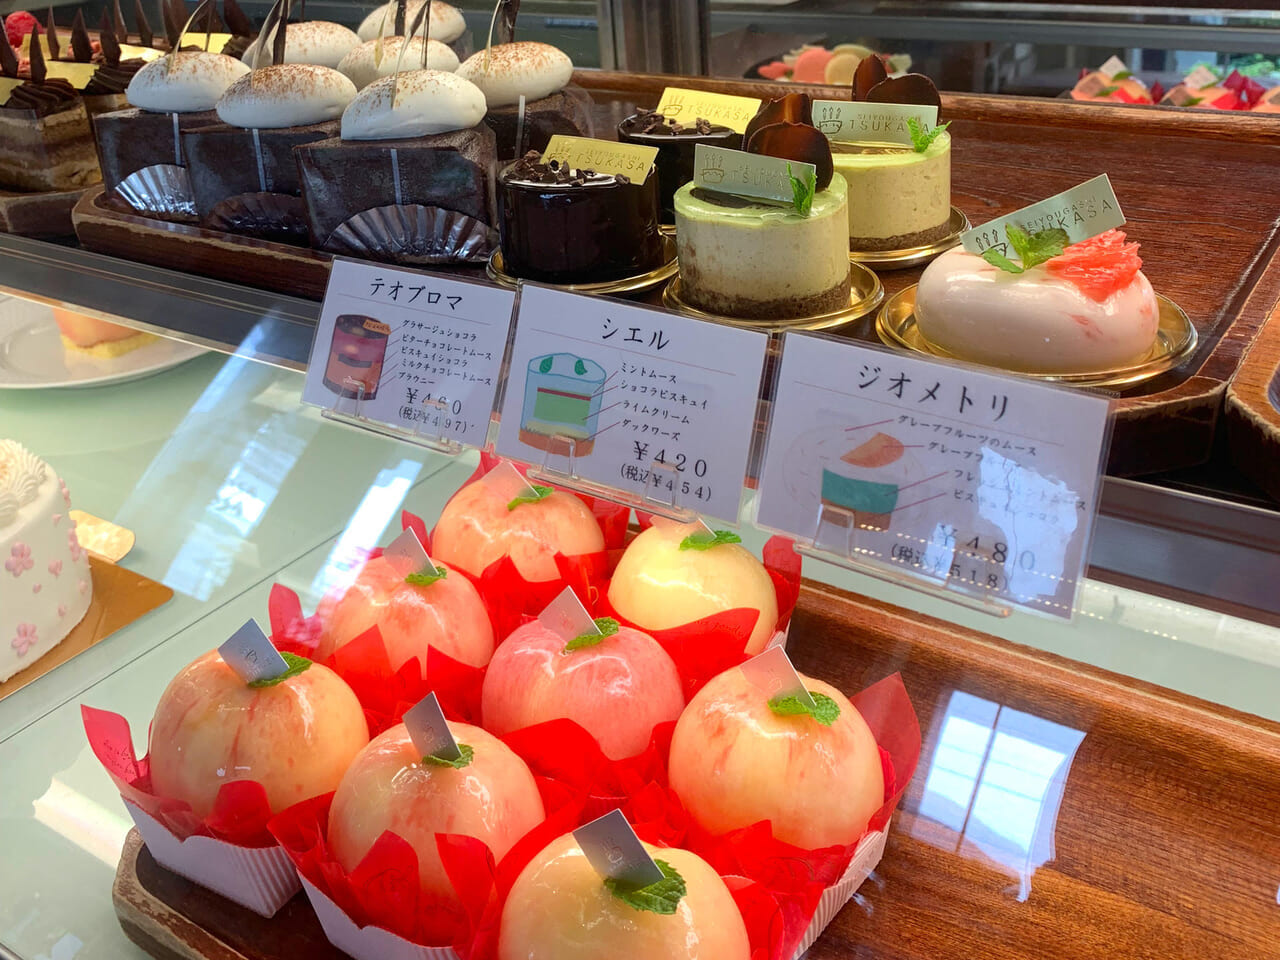 東村の人気店「西洋菓子 ツカサ」で桃を丸ごと使用した贅沢スイーツ「桃太郎」が販売中!!